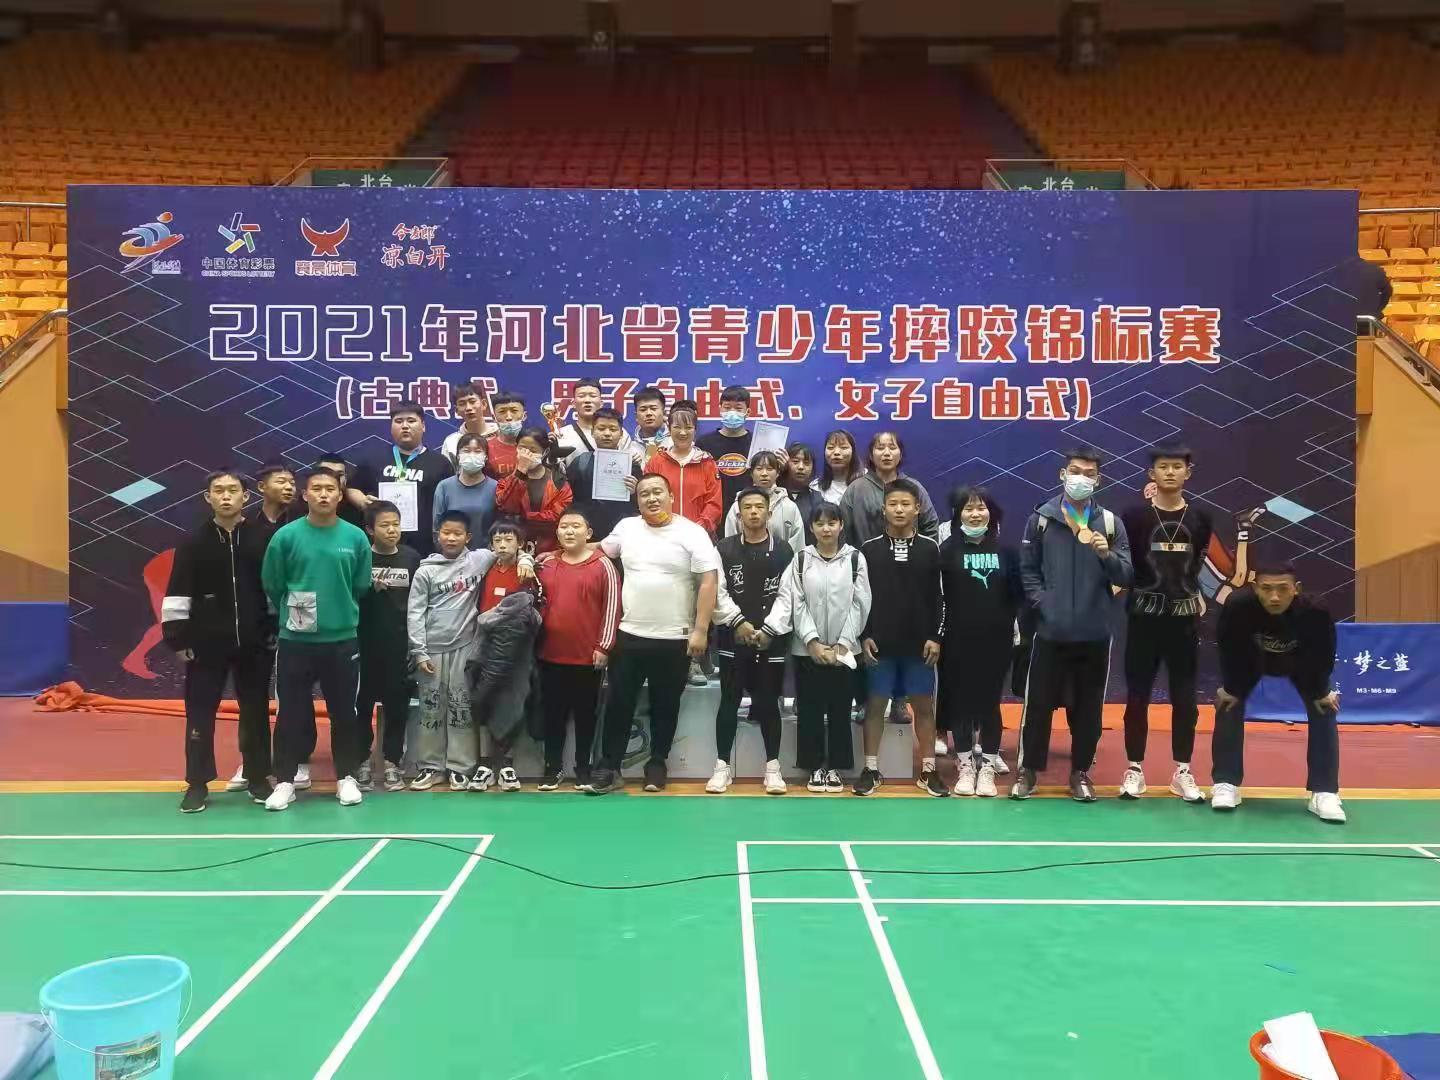 我校运动员在河北省青少年摔跤锦标赛自由式摔跤比赛中获1金、1银、2铜